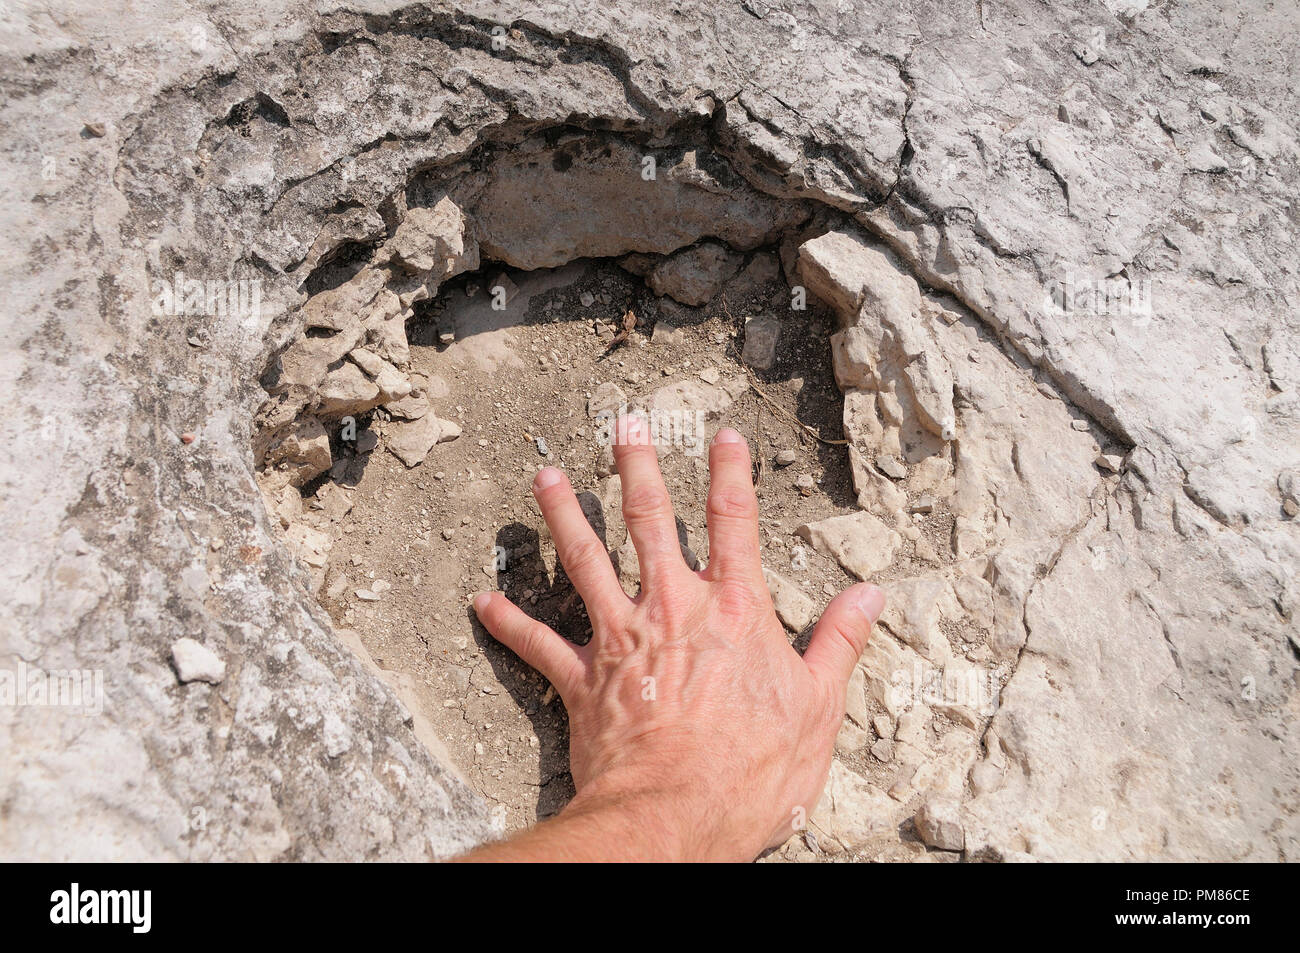 Italy, Trentino Alto Adige, Rovereto, Dinosaur footprint with hand, Piste de Dinosauri. Stock Photo